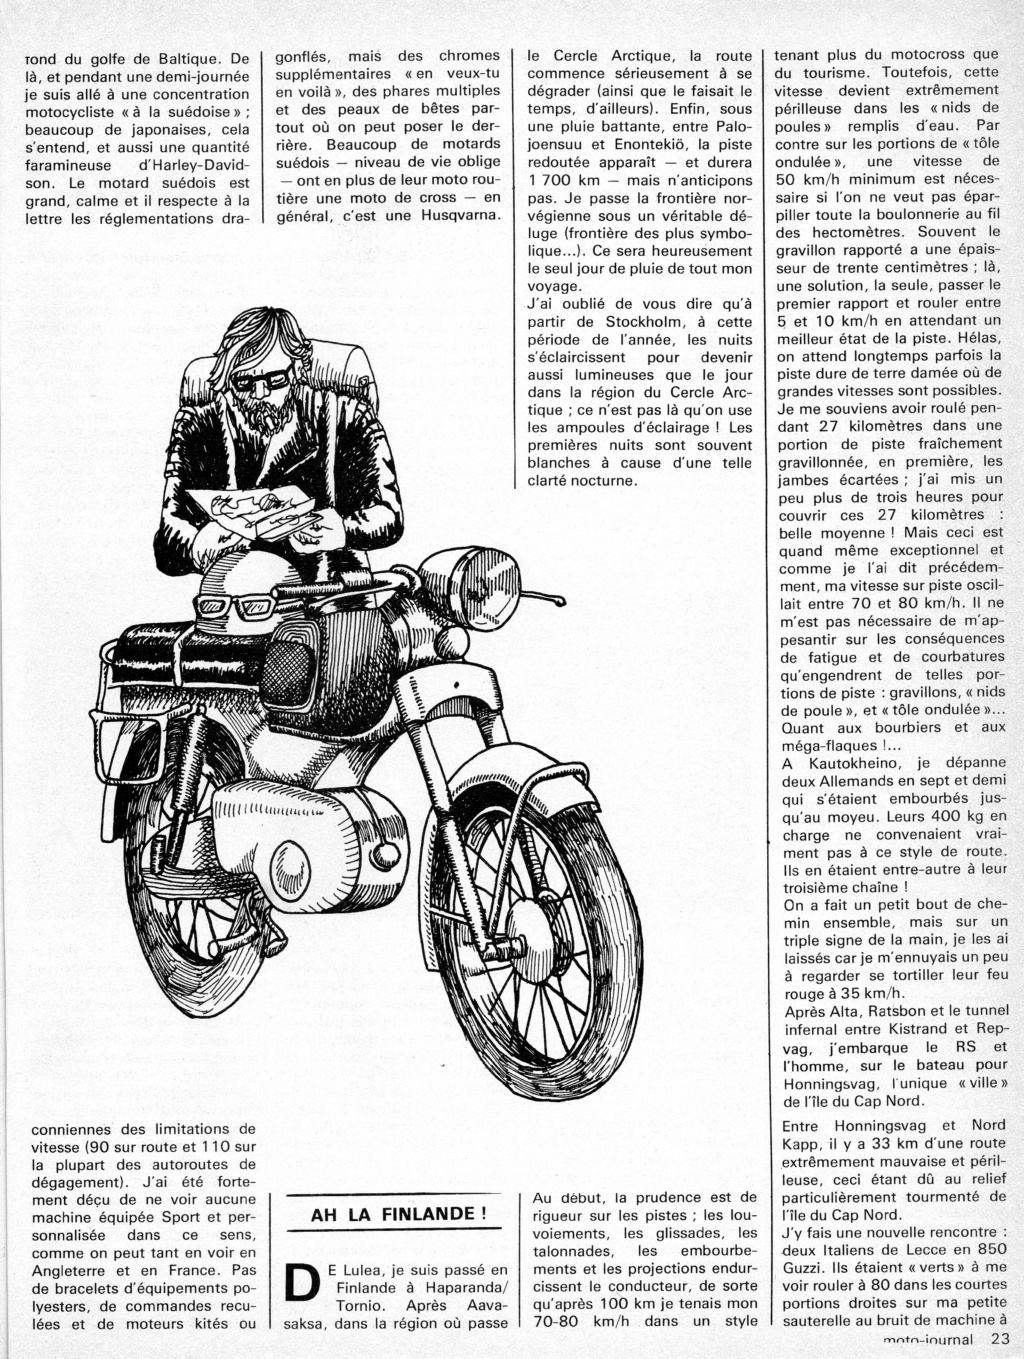 Le Kreidler RS dans la Presse. Suite. - Page 3 Cap_no21